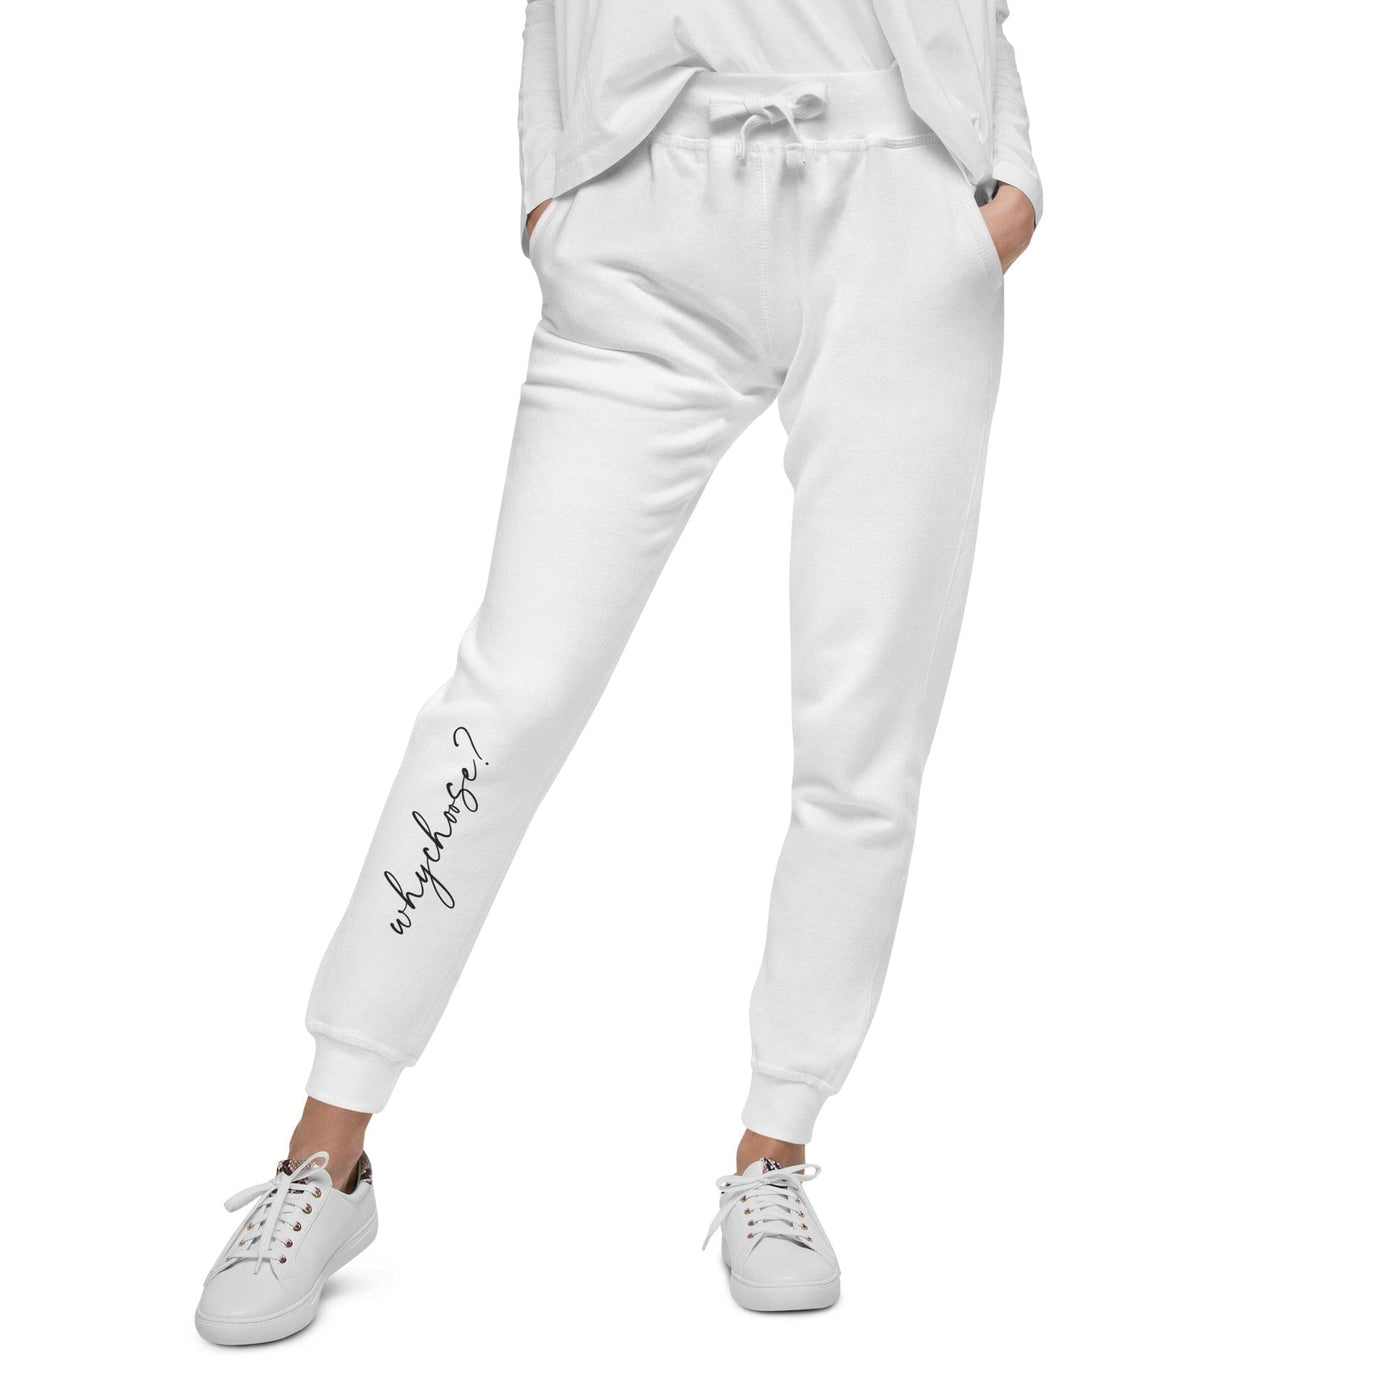 Lit Haven Booktique Sweatpants White / XS Why Choose? Fleece lined sweatpants